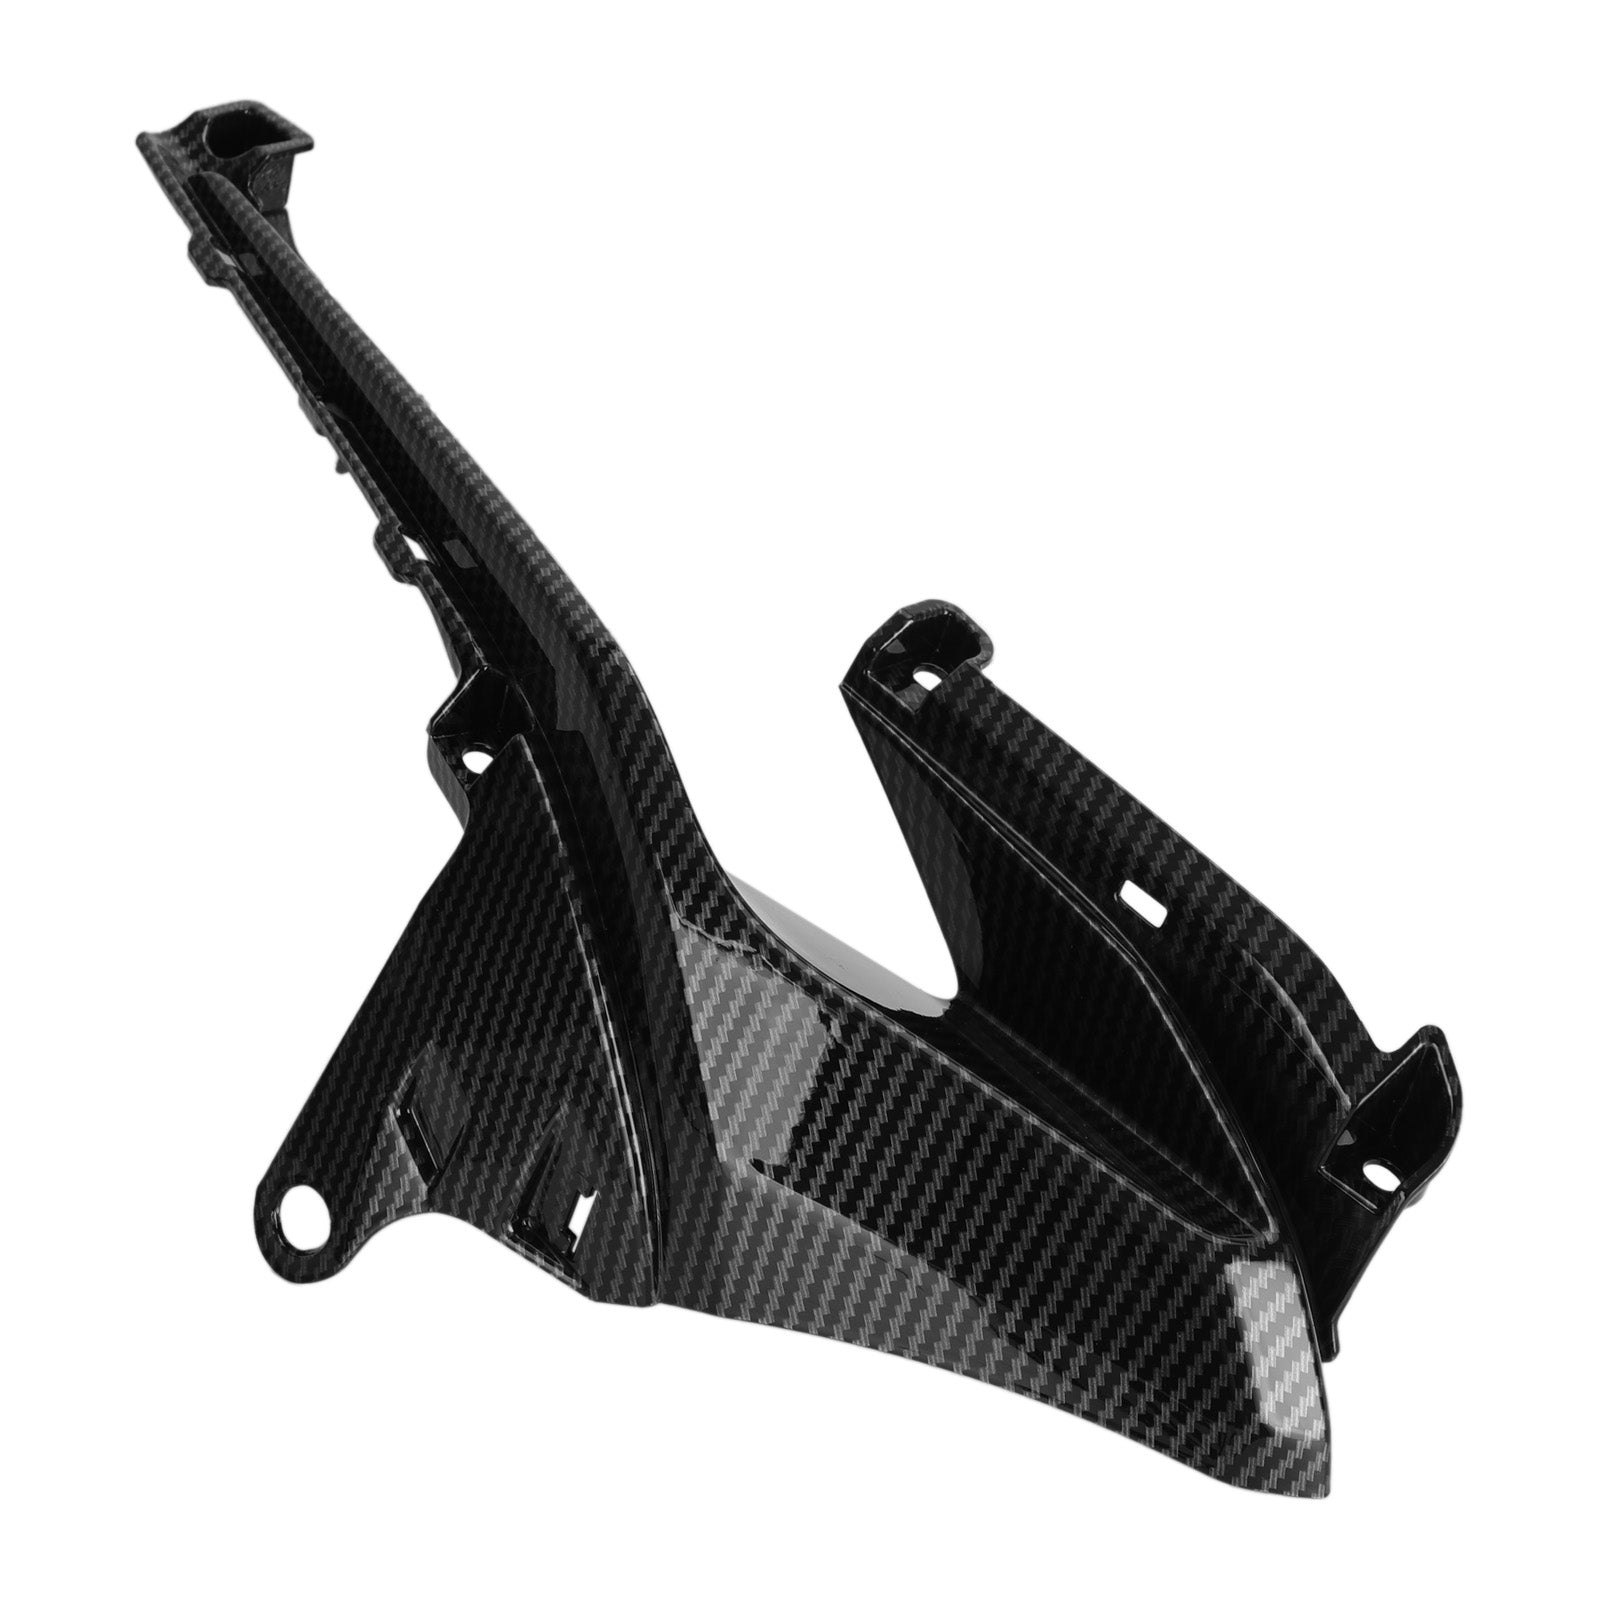 Lufteinlass-Abdeckung, Seitenteile, passend für Honda CBR500R 2019–2021, Carbon